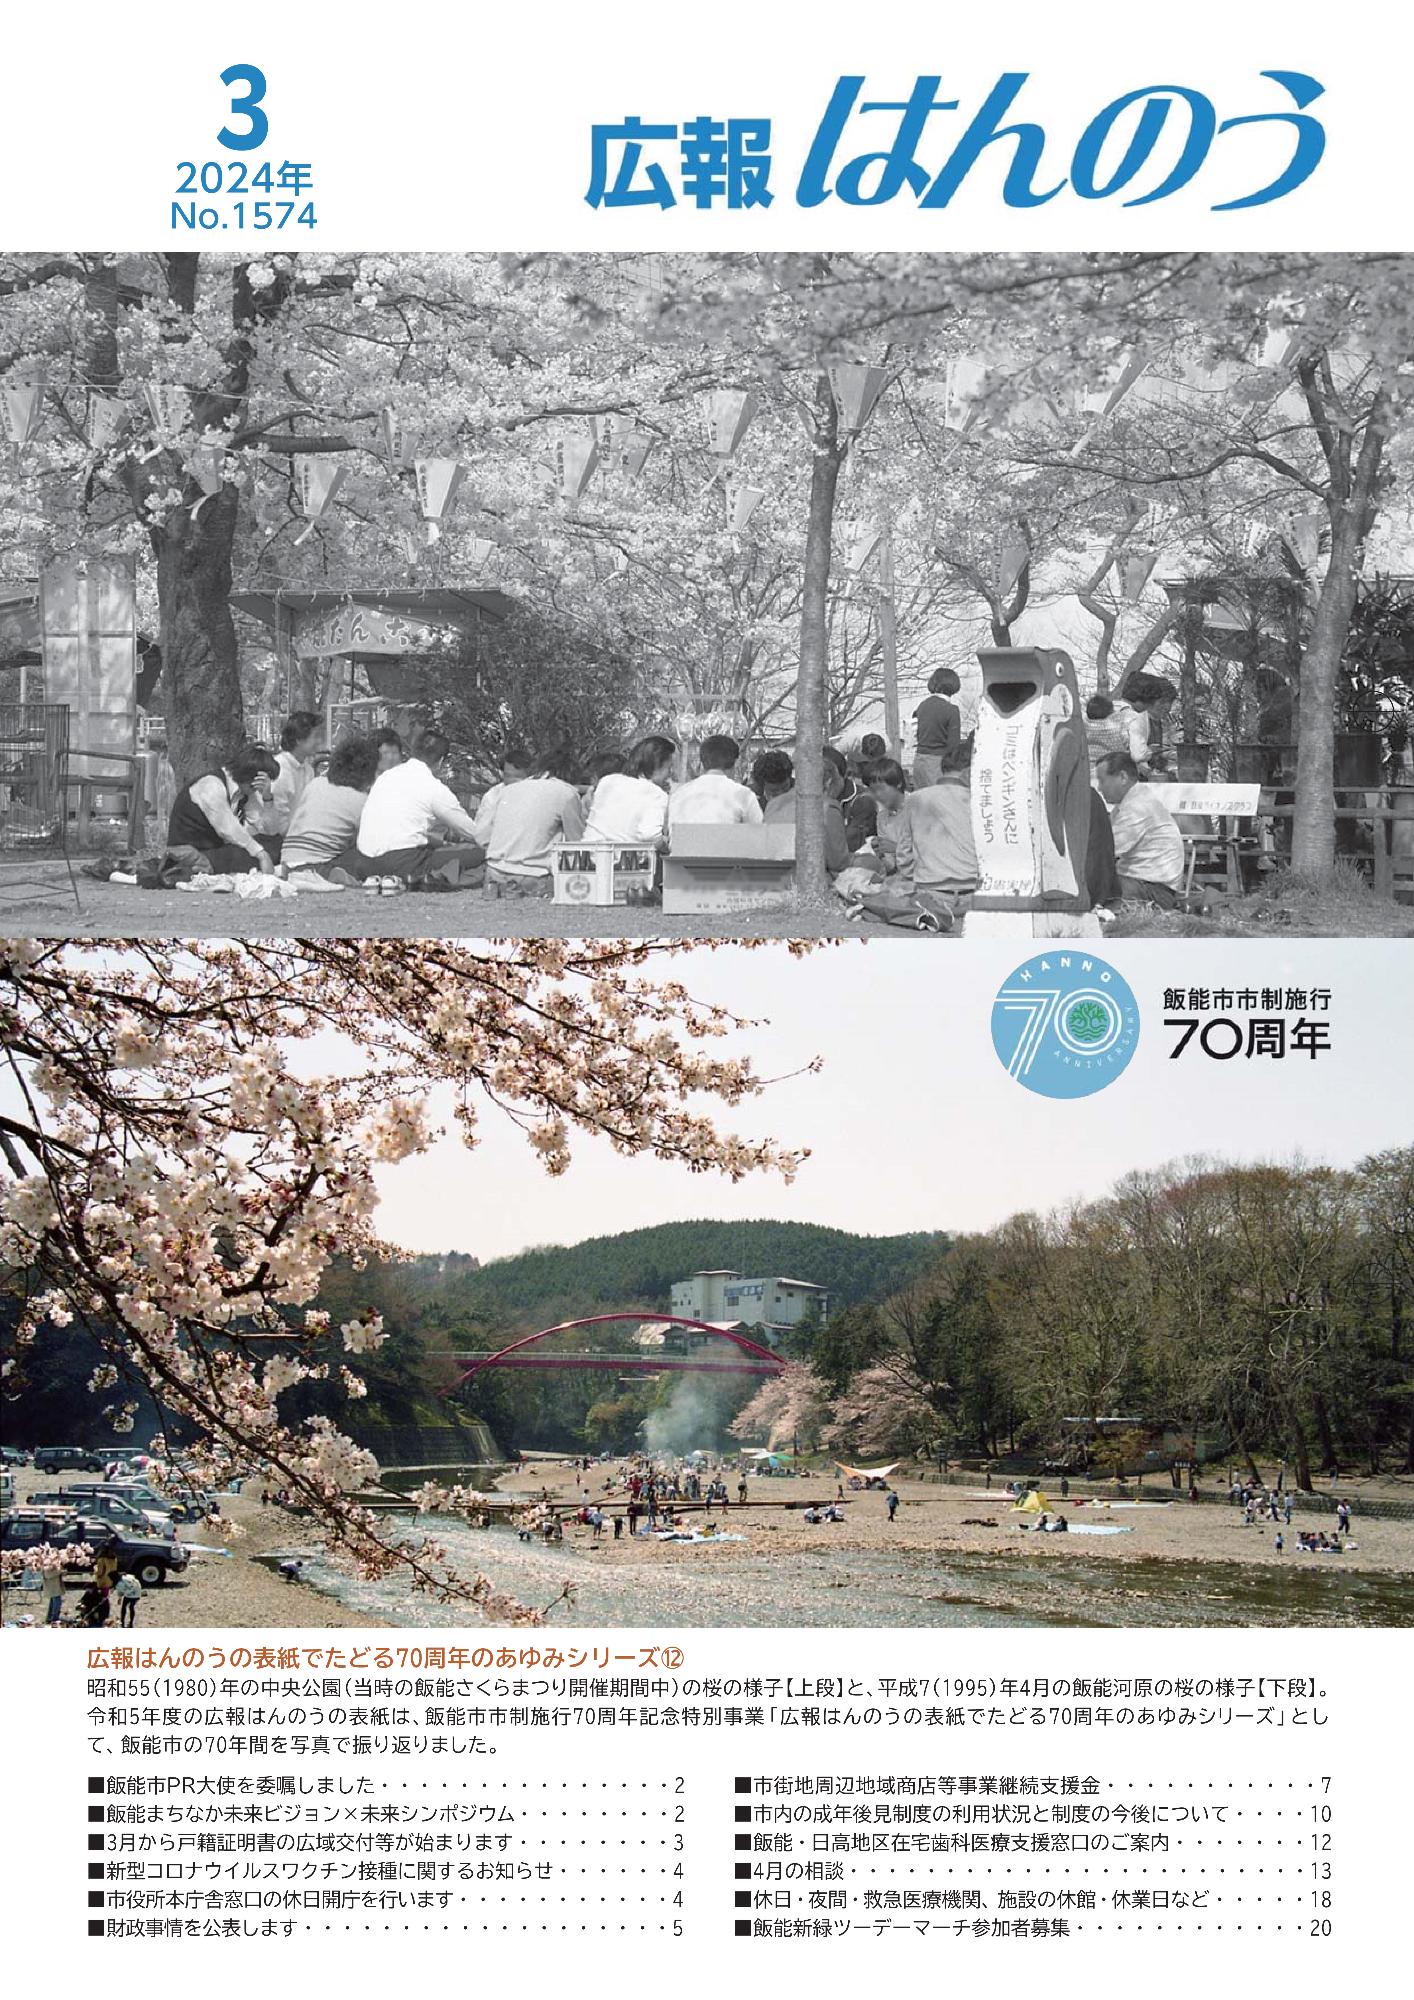 広報はんのう2024年3月1日号の表紙画像です。昭和55（1980）年の中央公園（当時の飯能さくらまつり開催期間中）の桜の様子と、平成7（1995）年4月の飯能河原の桜の様子の写真が掲載されています。 令和5年度の広報はんのうの表紙は、飯能市市制施行70周年記念特別事業「広報はんのうの表紙でたどる70周年のあゆみシリーズ」とし て、飯能市の70年間を写真で振り返りました。